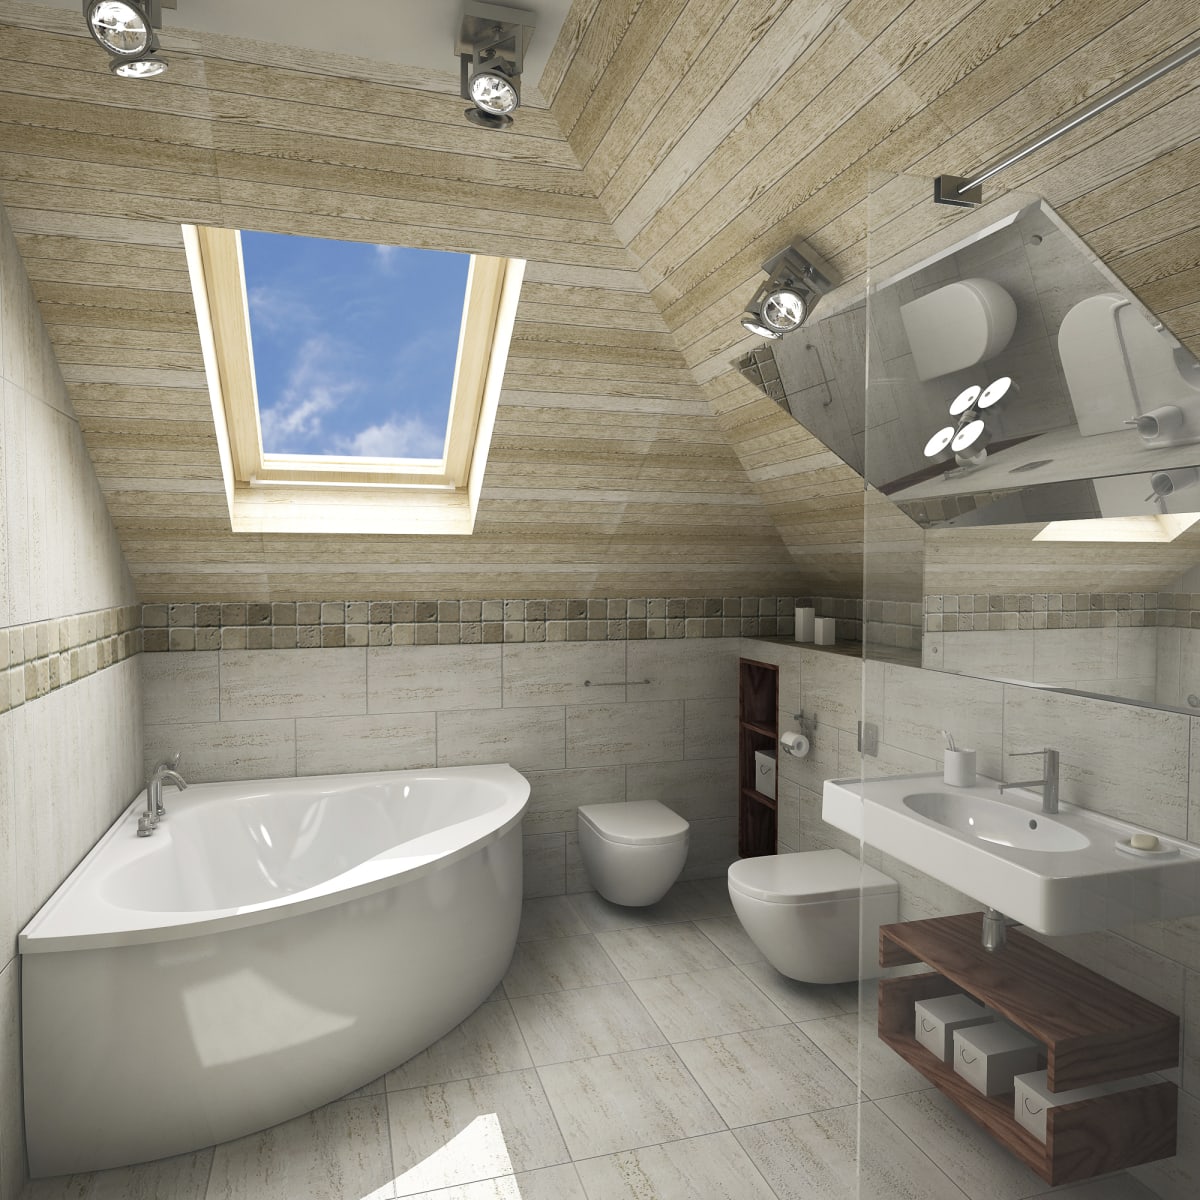 Create a Corner Bathtub in the Interior